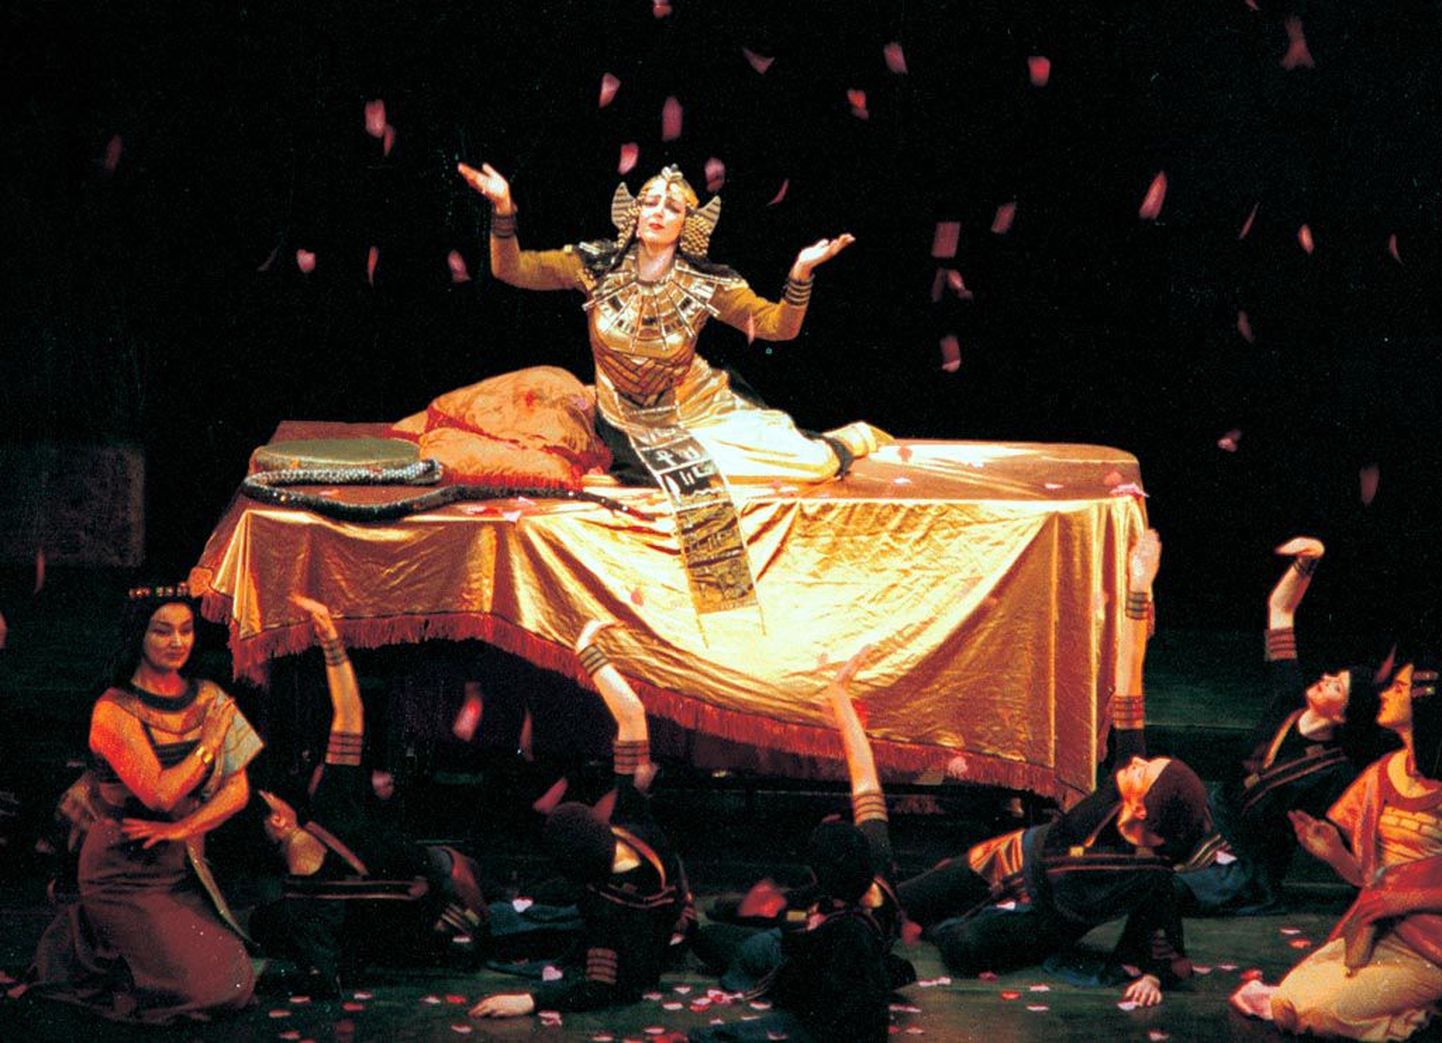 Pahelise karismaga Amnerise laulda on “Aida” kõige läbikomponeeritum, psühholoogiliselt pingestatuim ja kauneim partii. Inesa Linaburgytè esitus muutus ooperi arenedes üha paremaks.